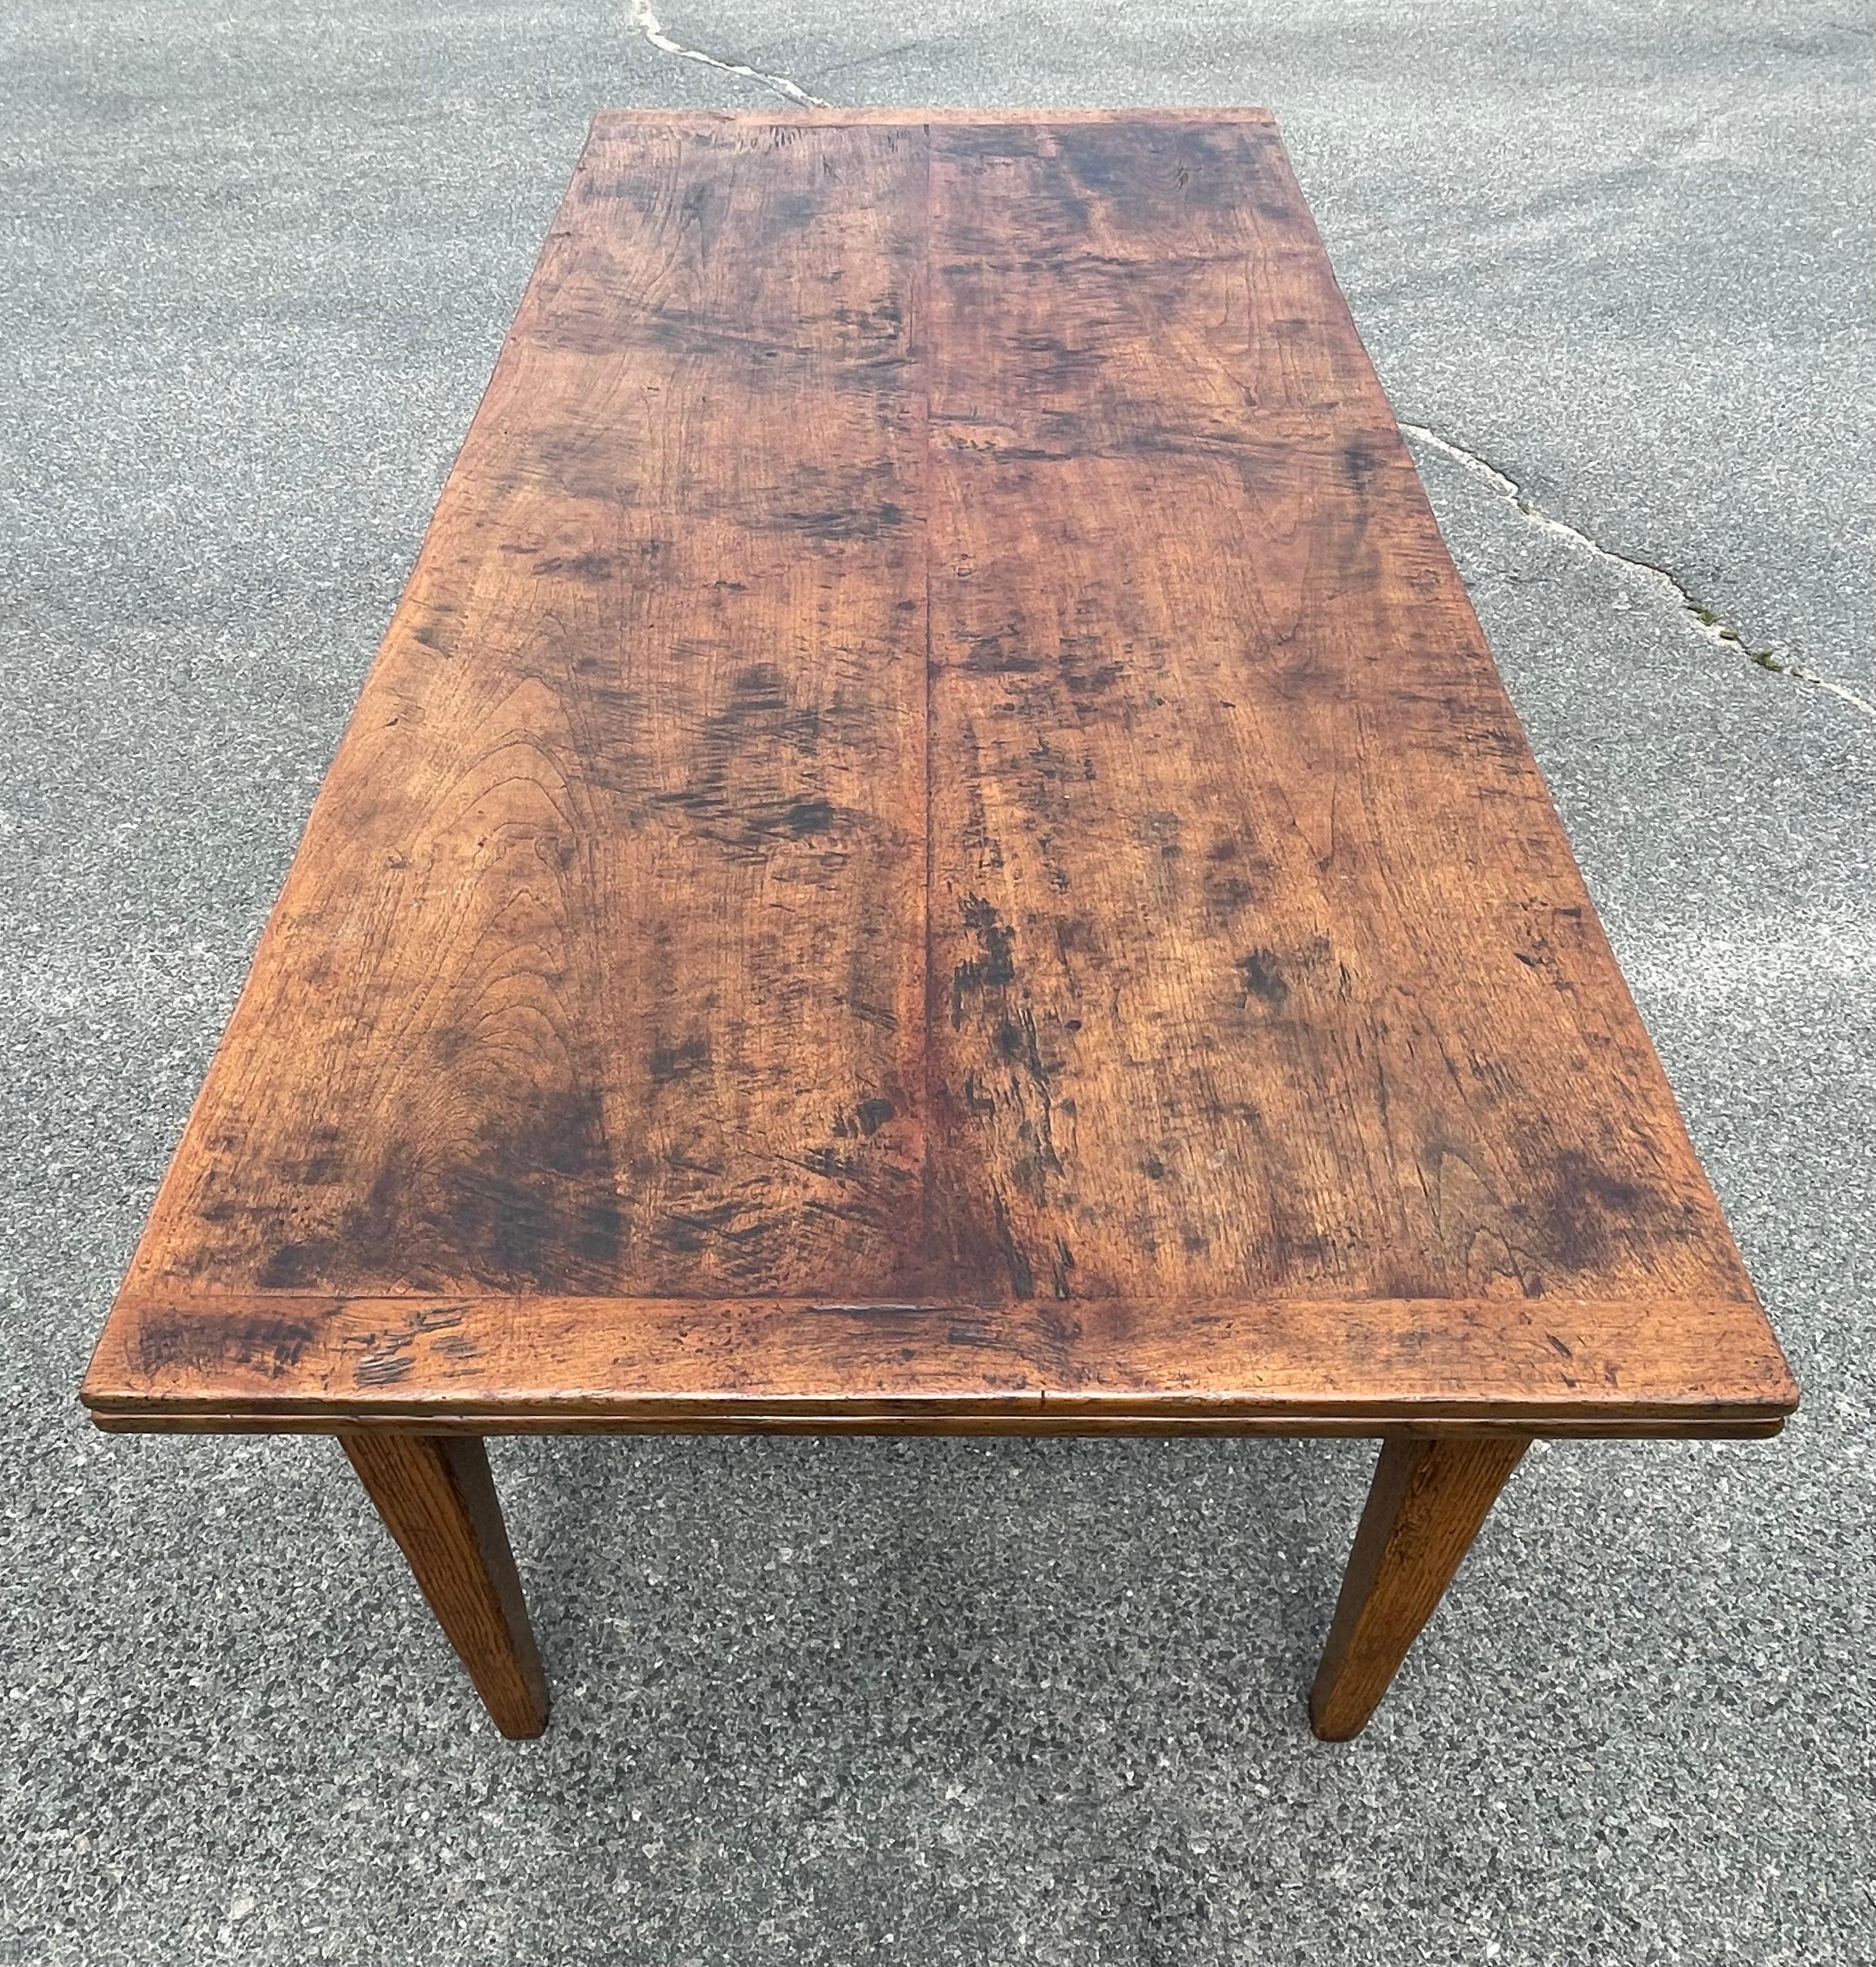 Eichenholztisch mit schöner, nussbaummarmorierter Platte auf konischen Beinen.
Vollständig geöffnet ist er bis zu 123